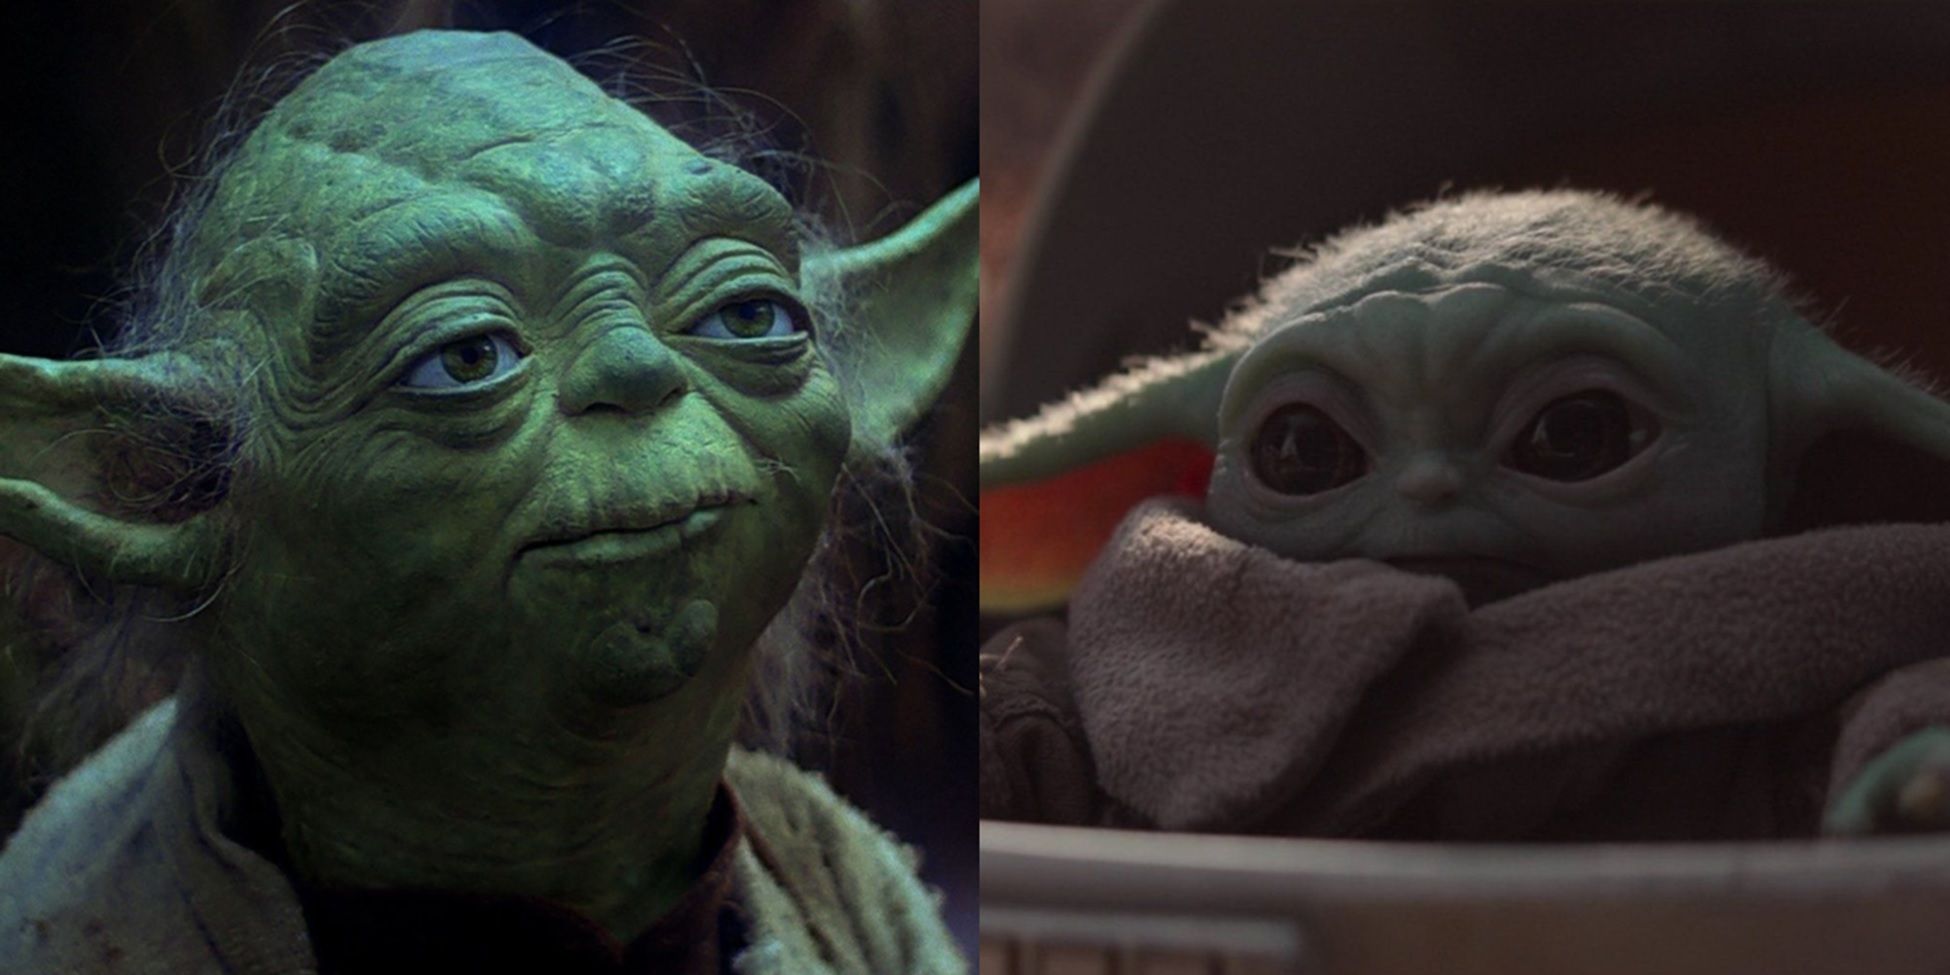 Yoda and Grogu